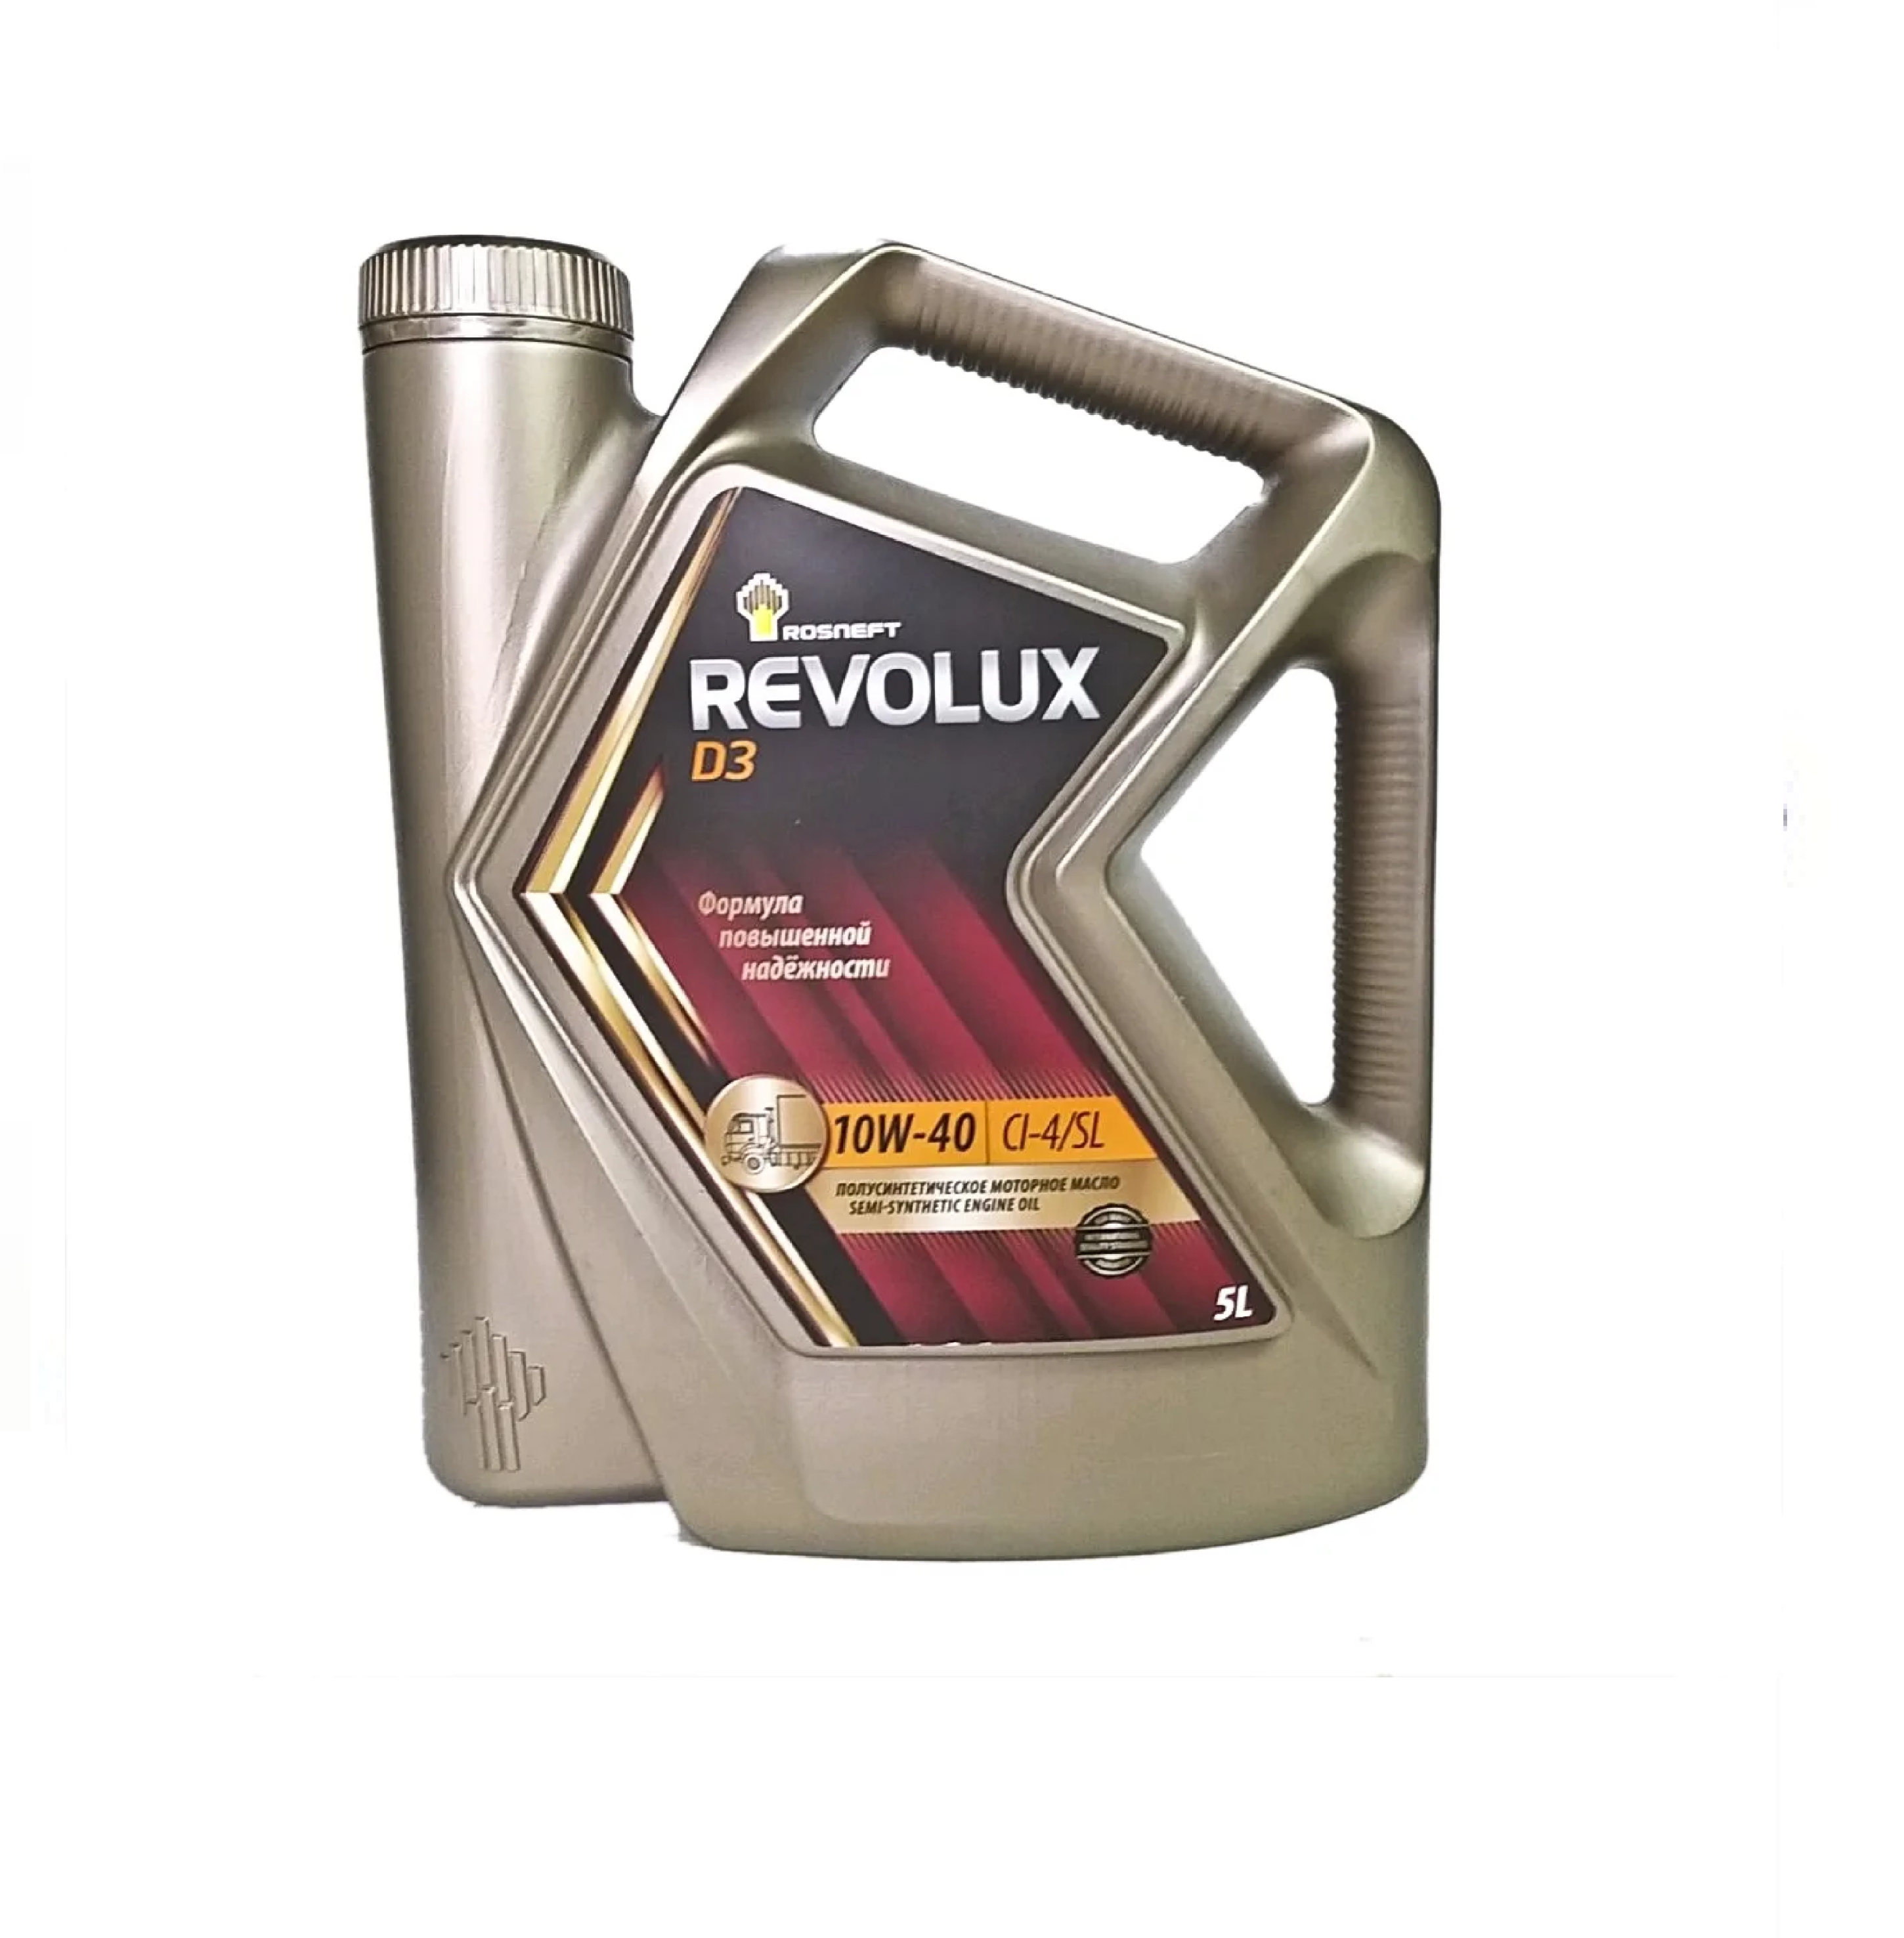 Купить масло роснефть полусинтетика. Масло моторное Rosneft Revolux d3 5w–40 20л. Масло моторное Роснефть 10w 40 полусинтетика. Масло моторное Rosneft Revolux d3 10w/- 40 ci-4/SL. Rosneft Revolux d1 15w-40 (5л.).